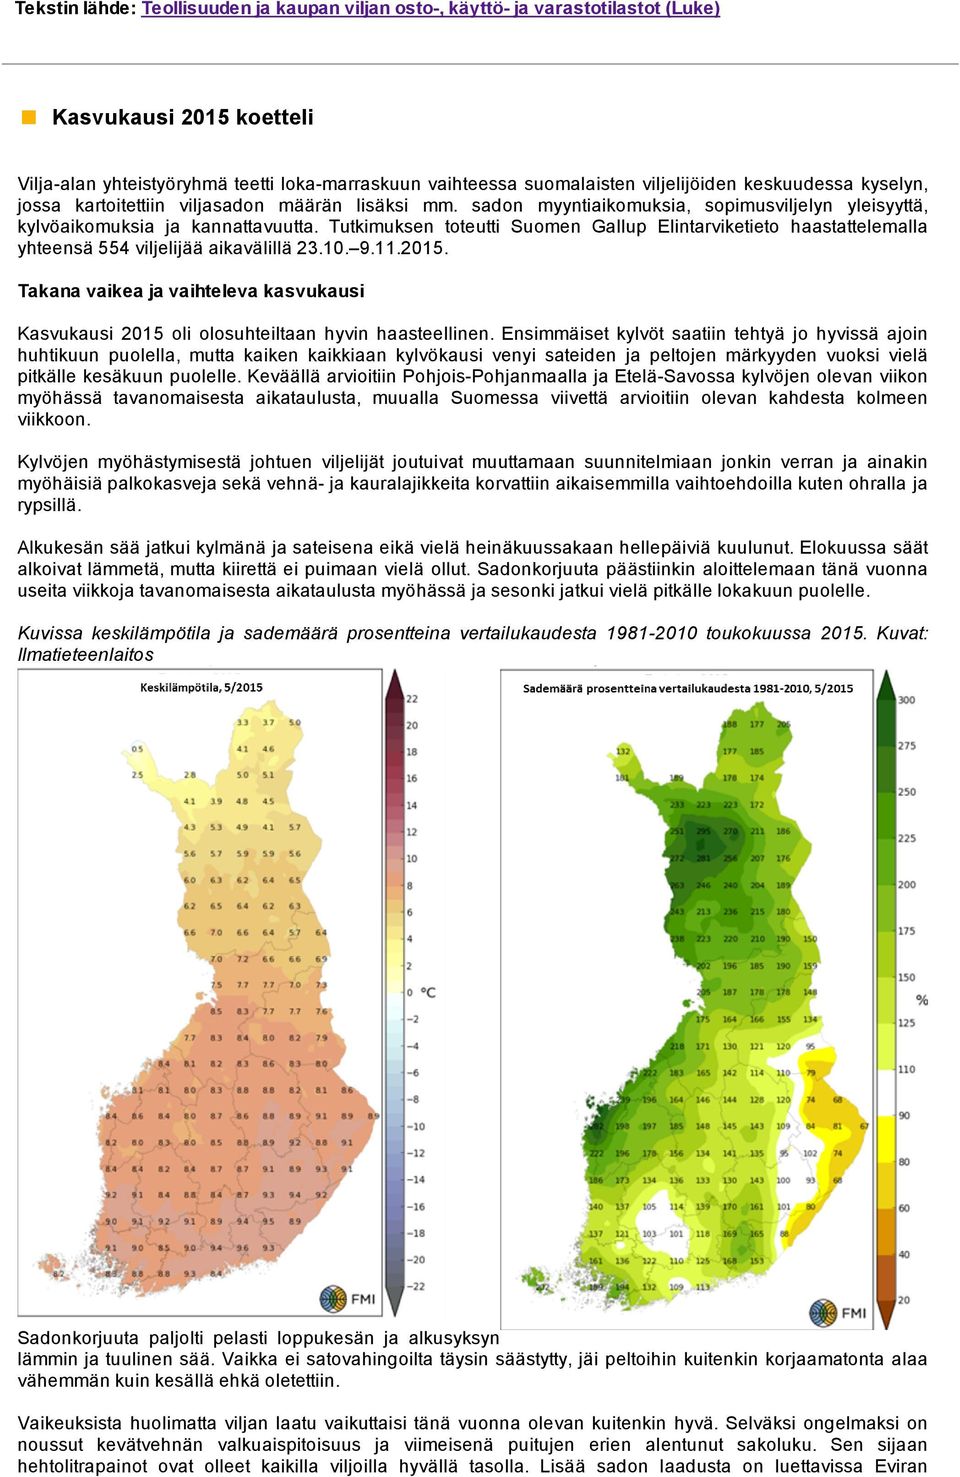 Tutkimuksen toteutti Suomen Gallup Elintarviketieto haastattelemalla yhteensä 554 viljelijää aikavälillä 23.10. 9.11.2015.